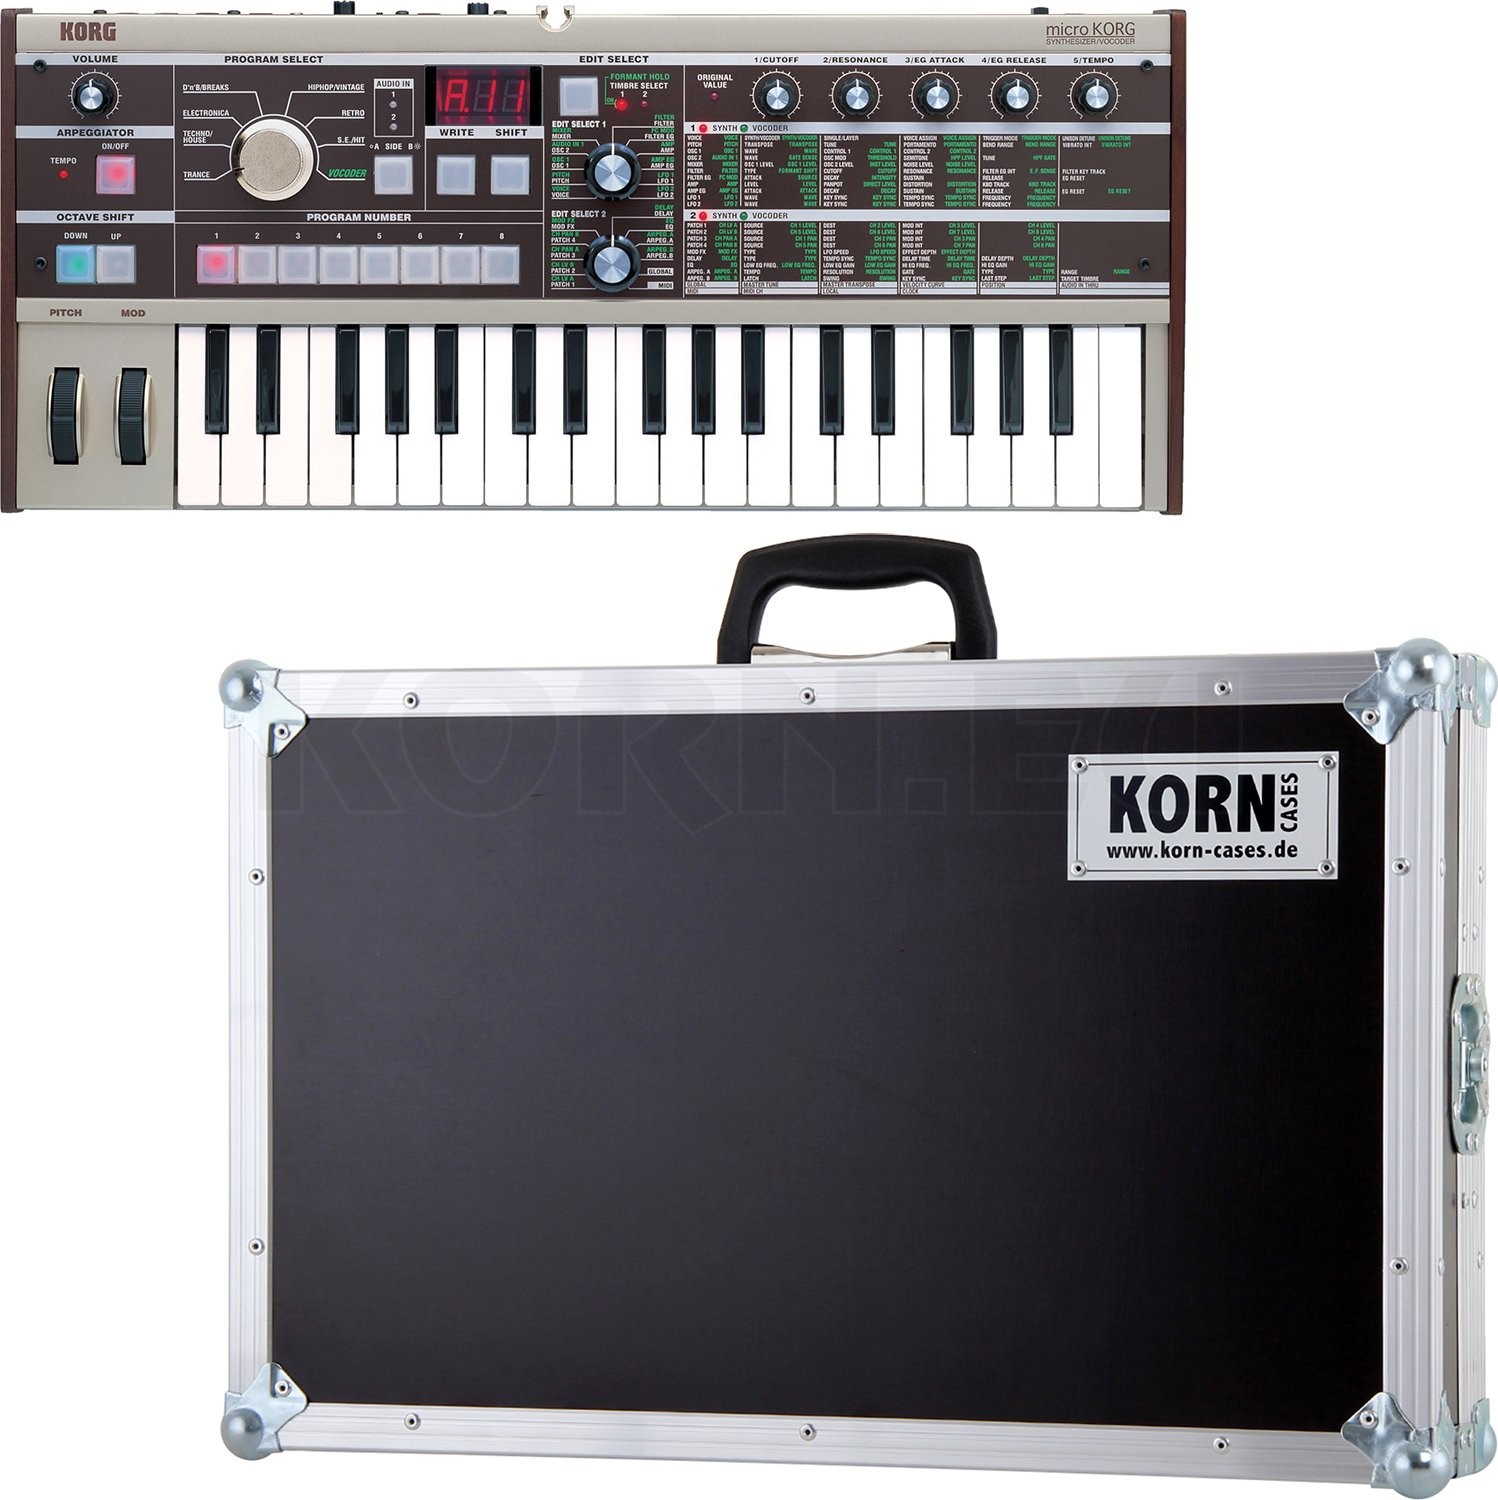 Korg MicroKORG Synthesizer + Hardcase | music store